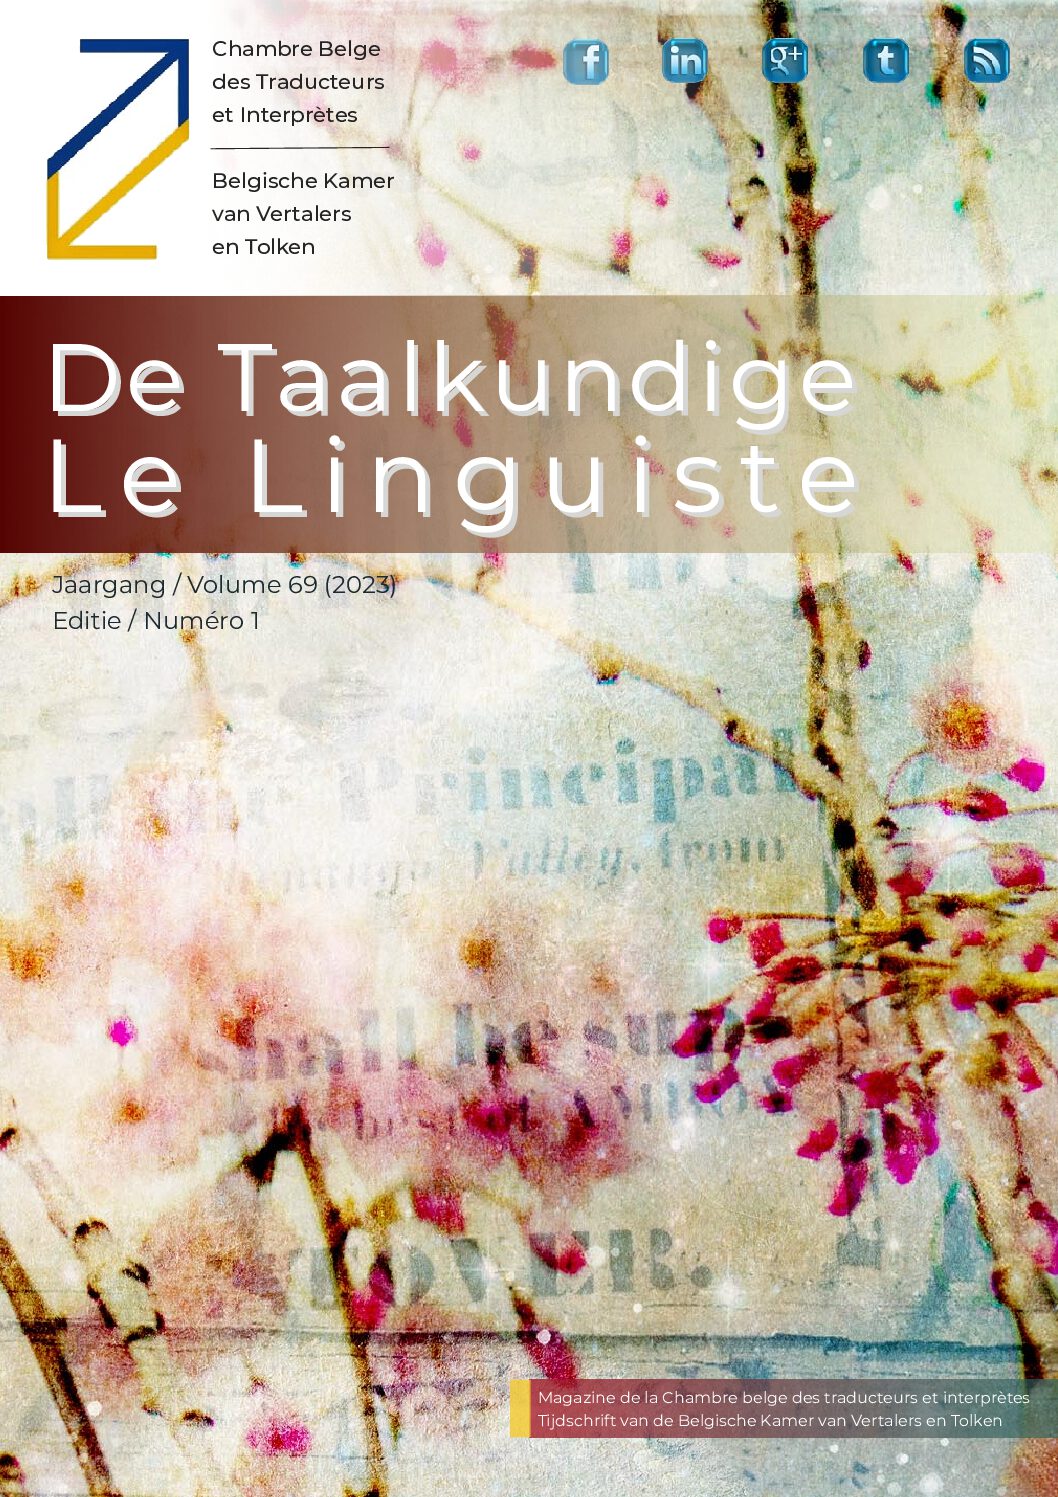 Image de présentation pour le document : De Taalkundige – Le Linguiste 2023-1